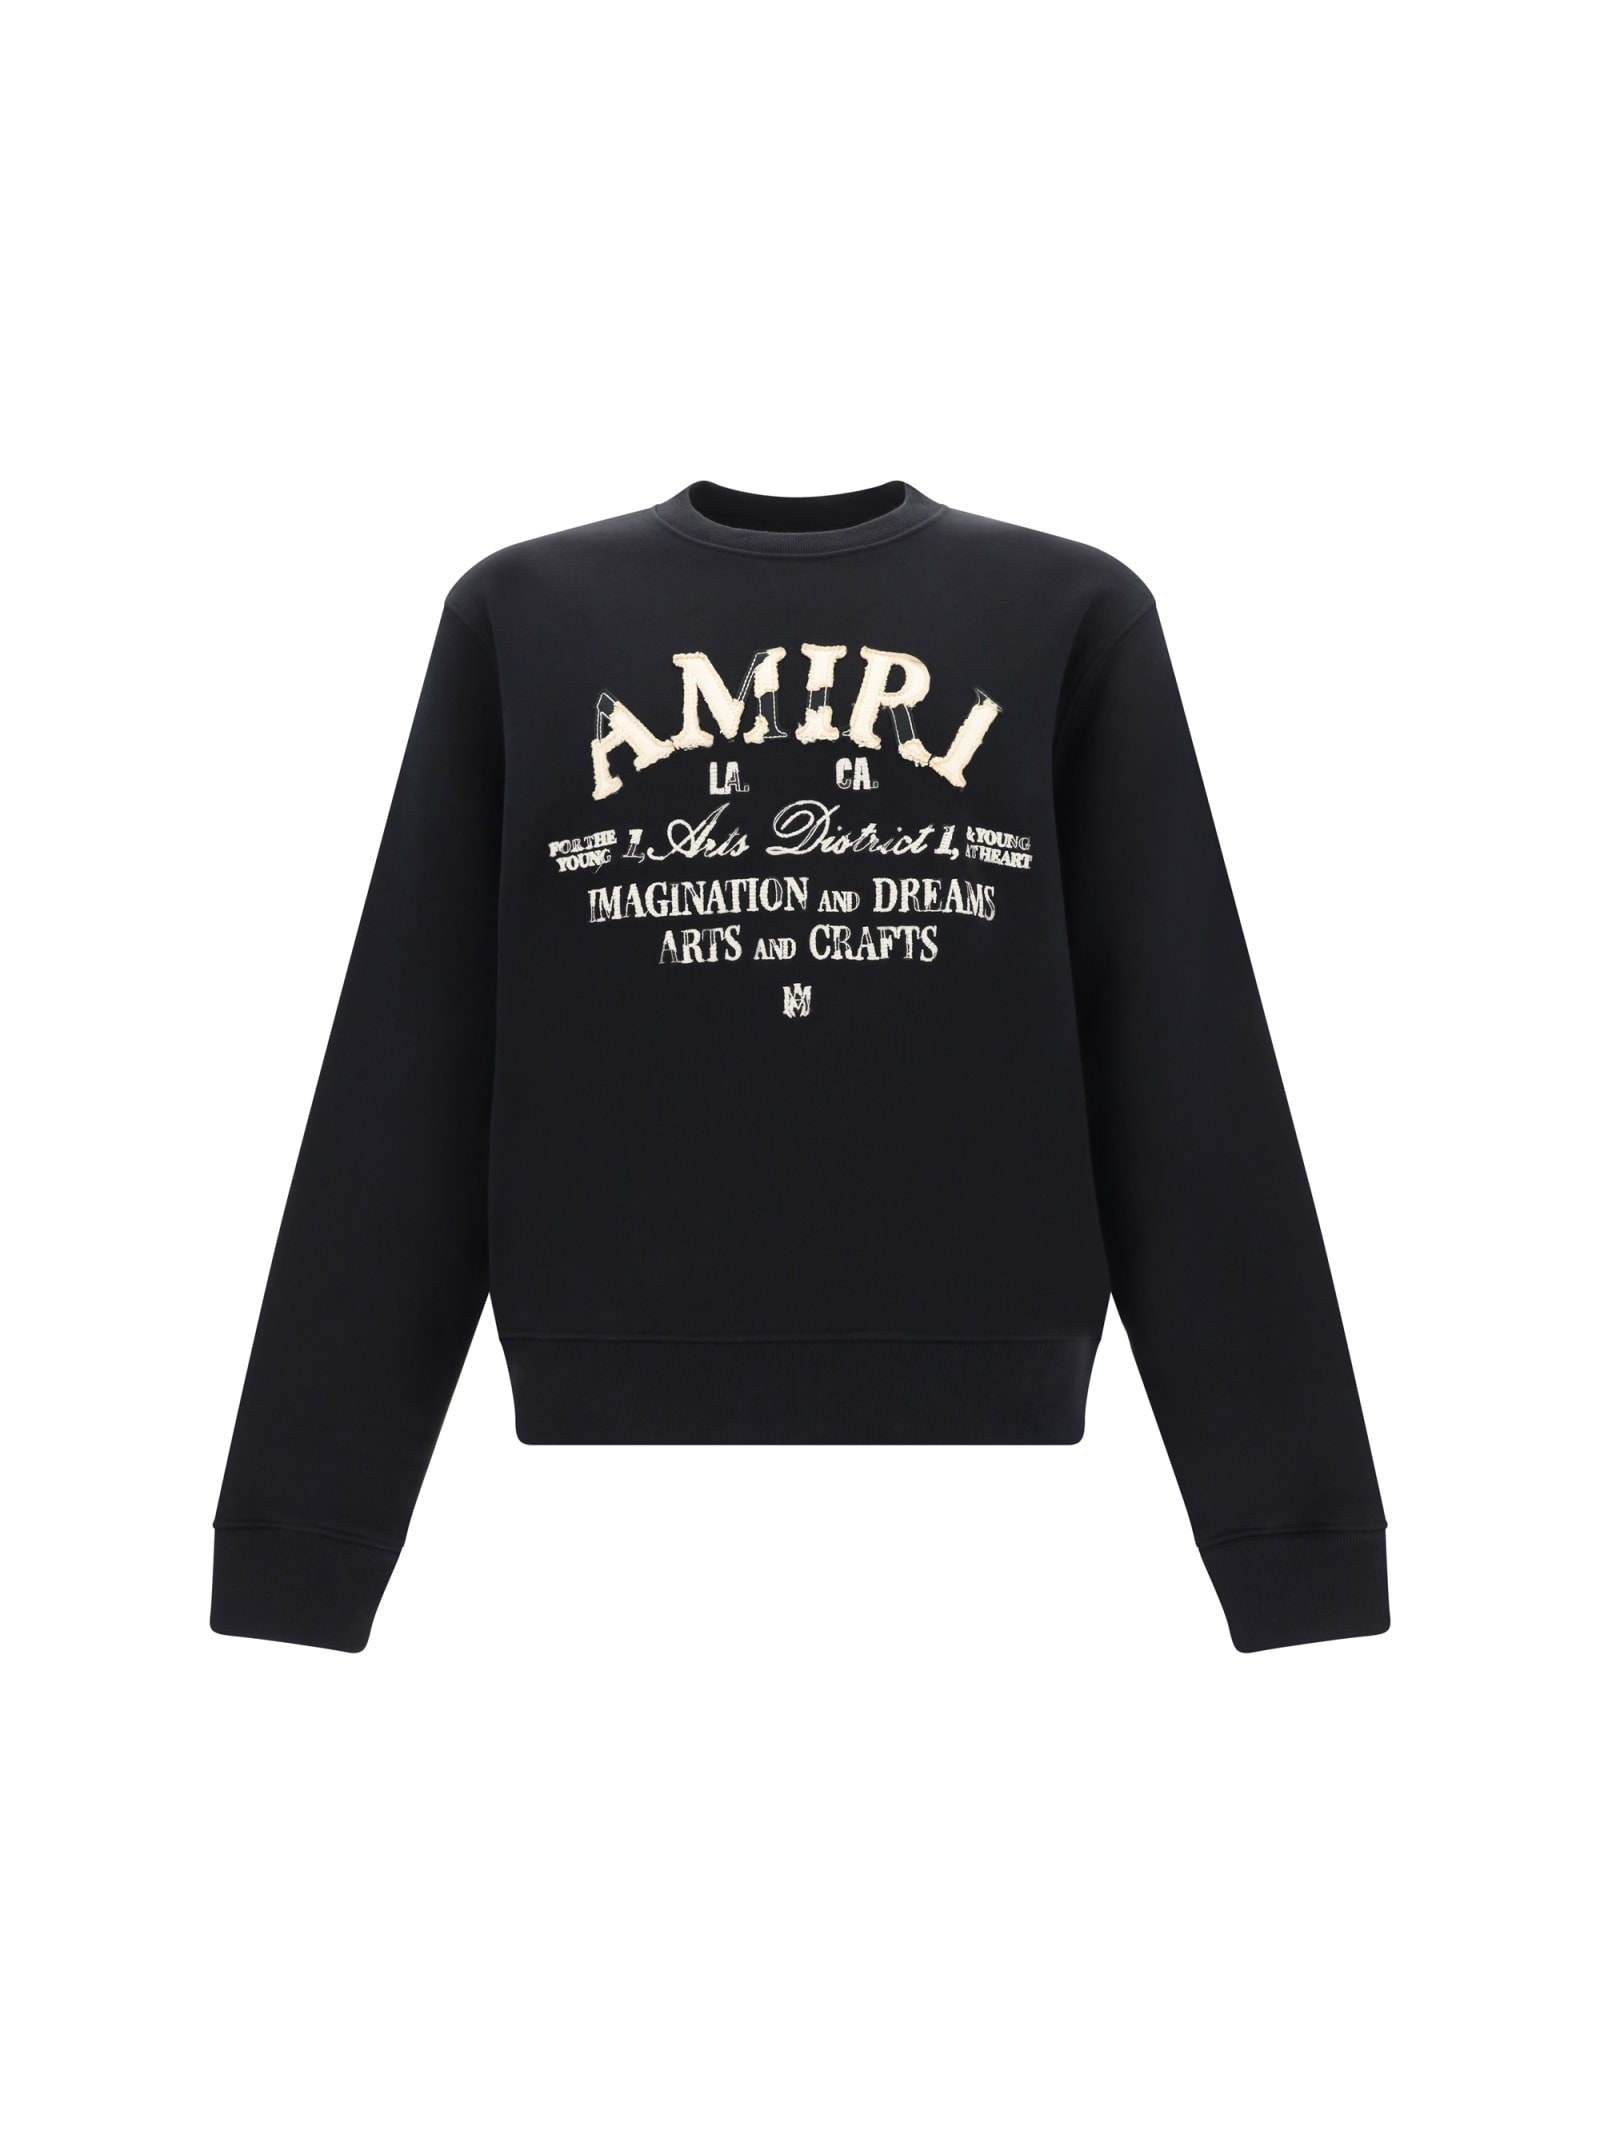 AMIRI Sweatshirt